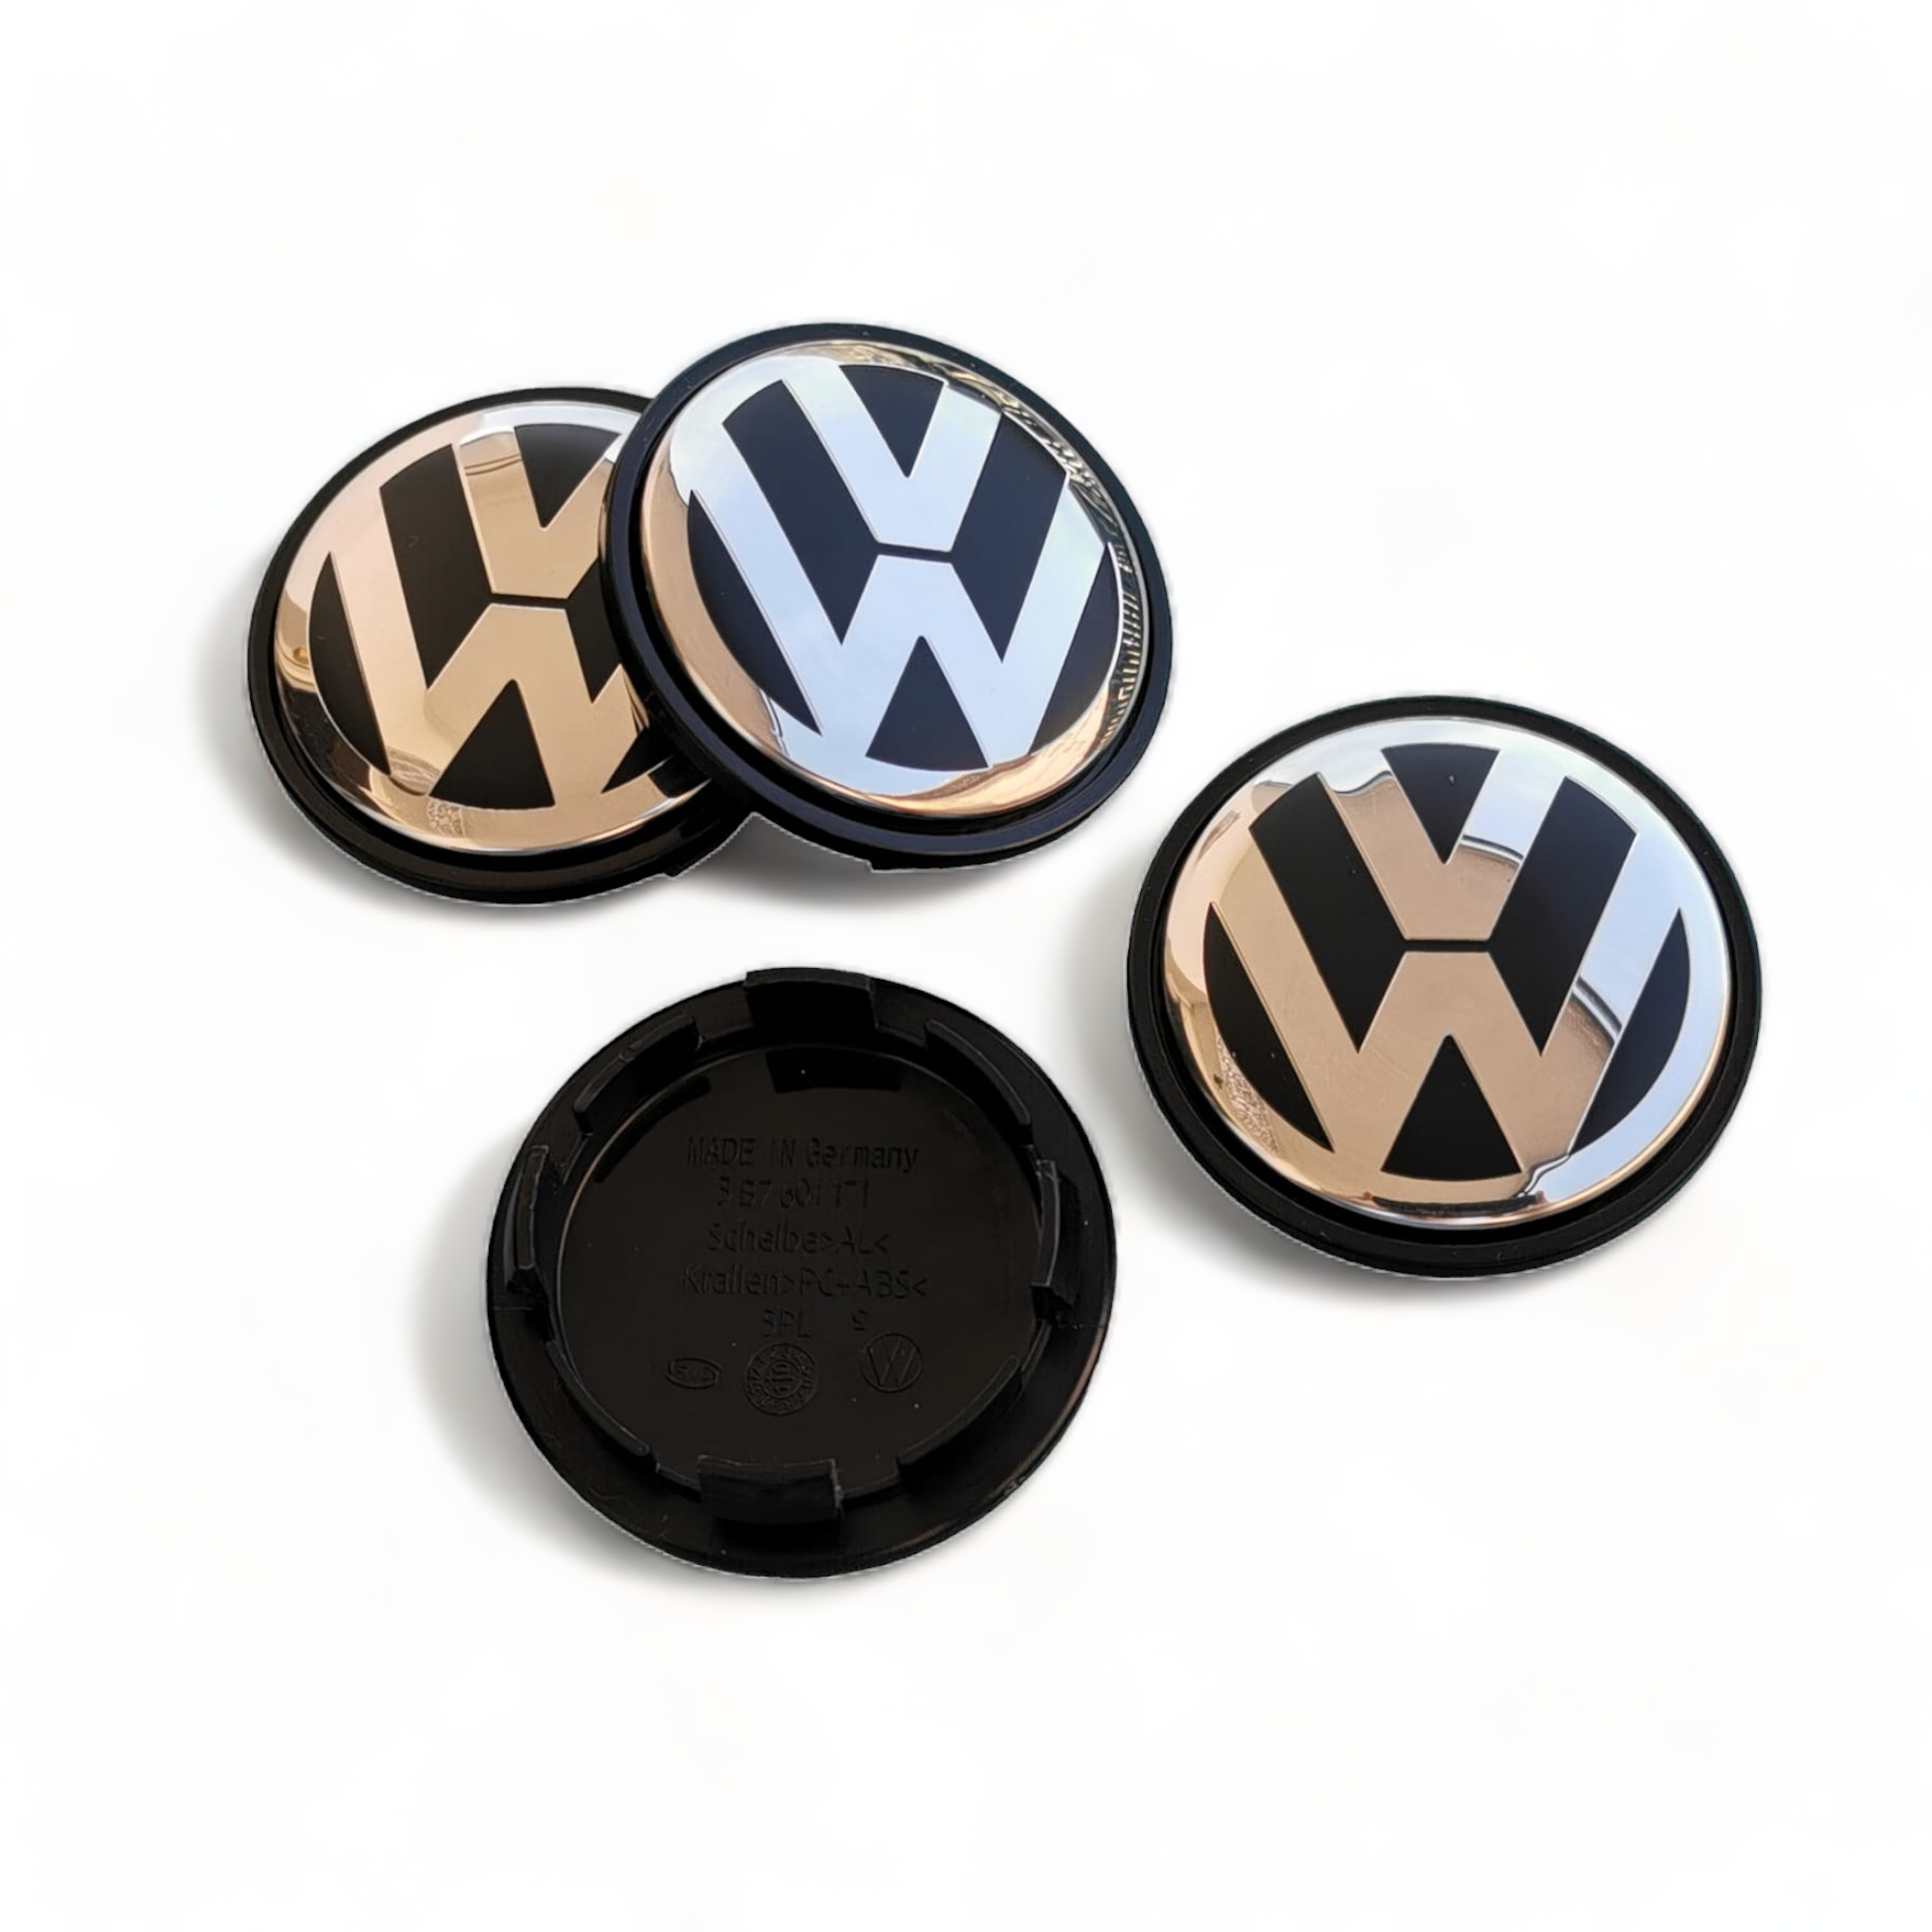 Tapabujes Volkswagen 65 mm Tapas LLantas para Centros de VW Ruedas  Tapacubos 